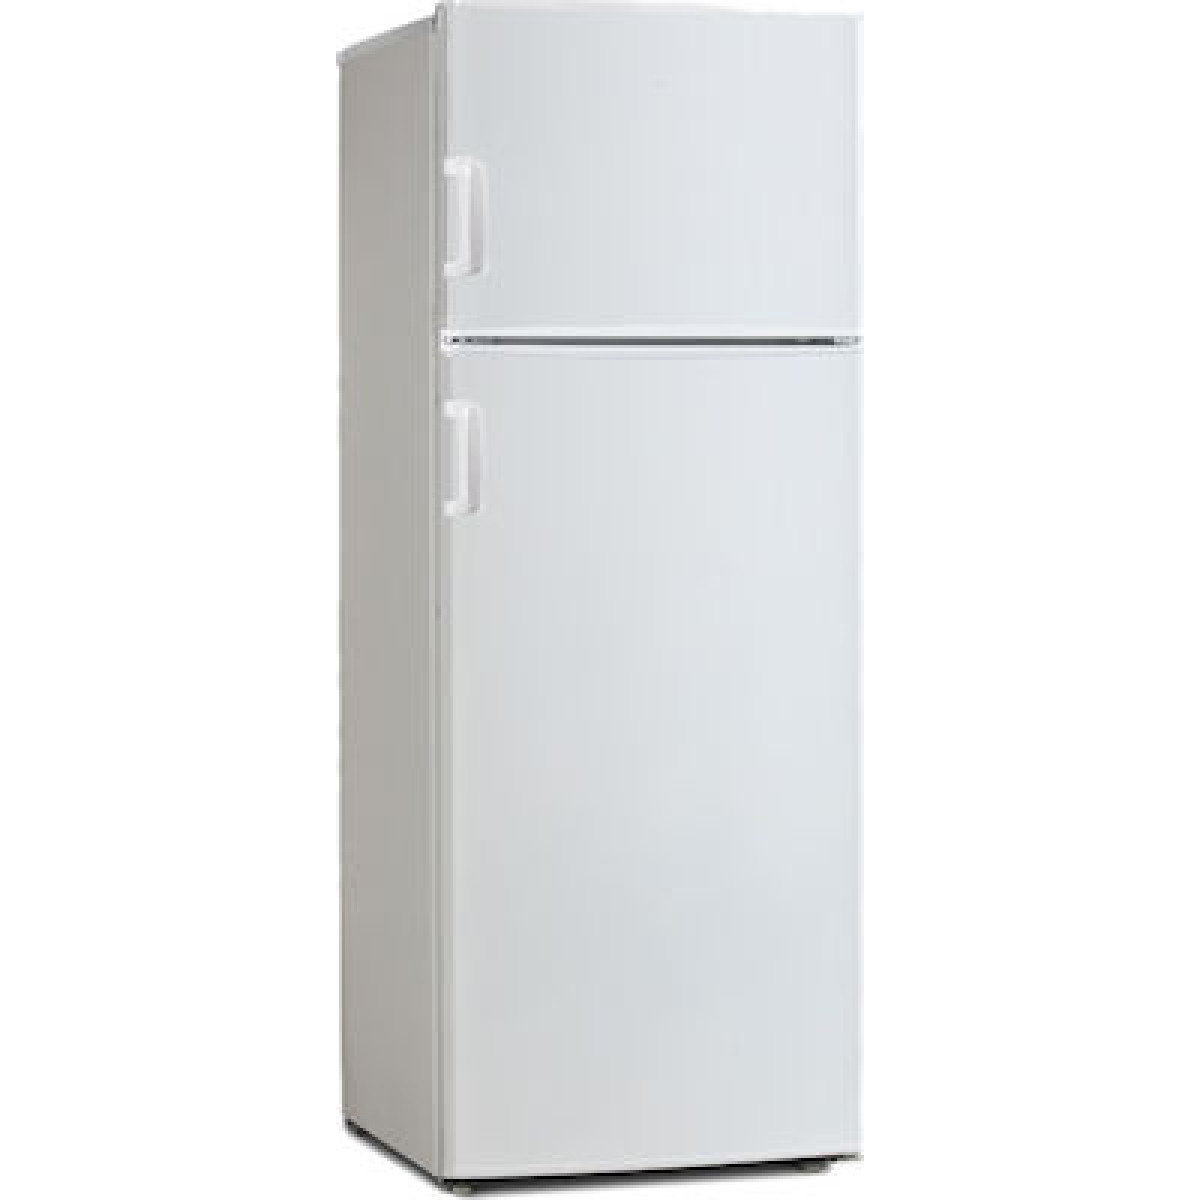 Ψυγείο Δίπορτο Winstar MRF 217 205 lt Α+ Ψυγεία δίπορτα